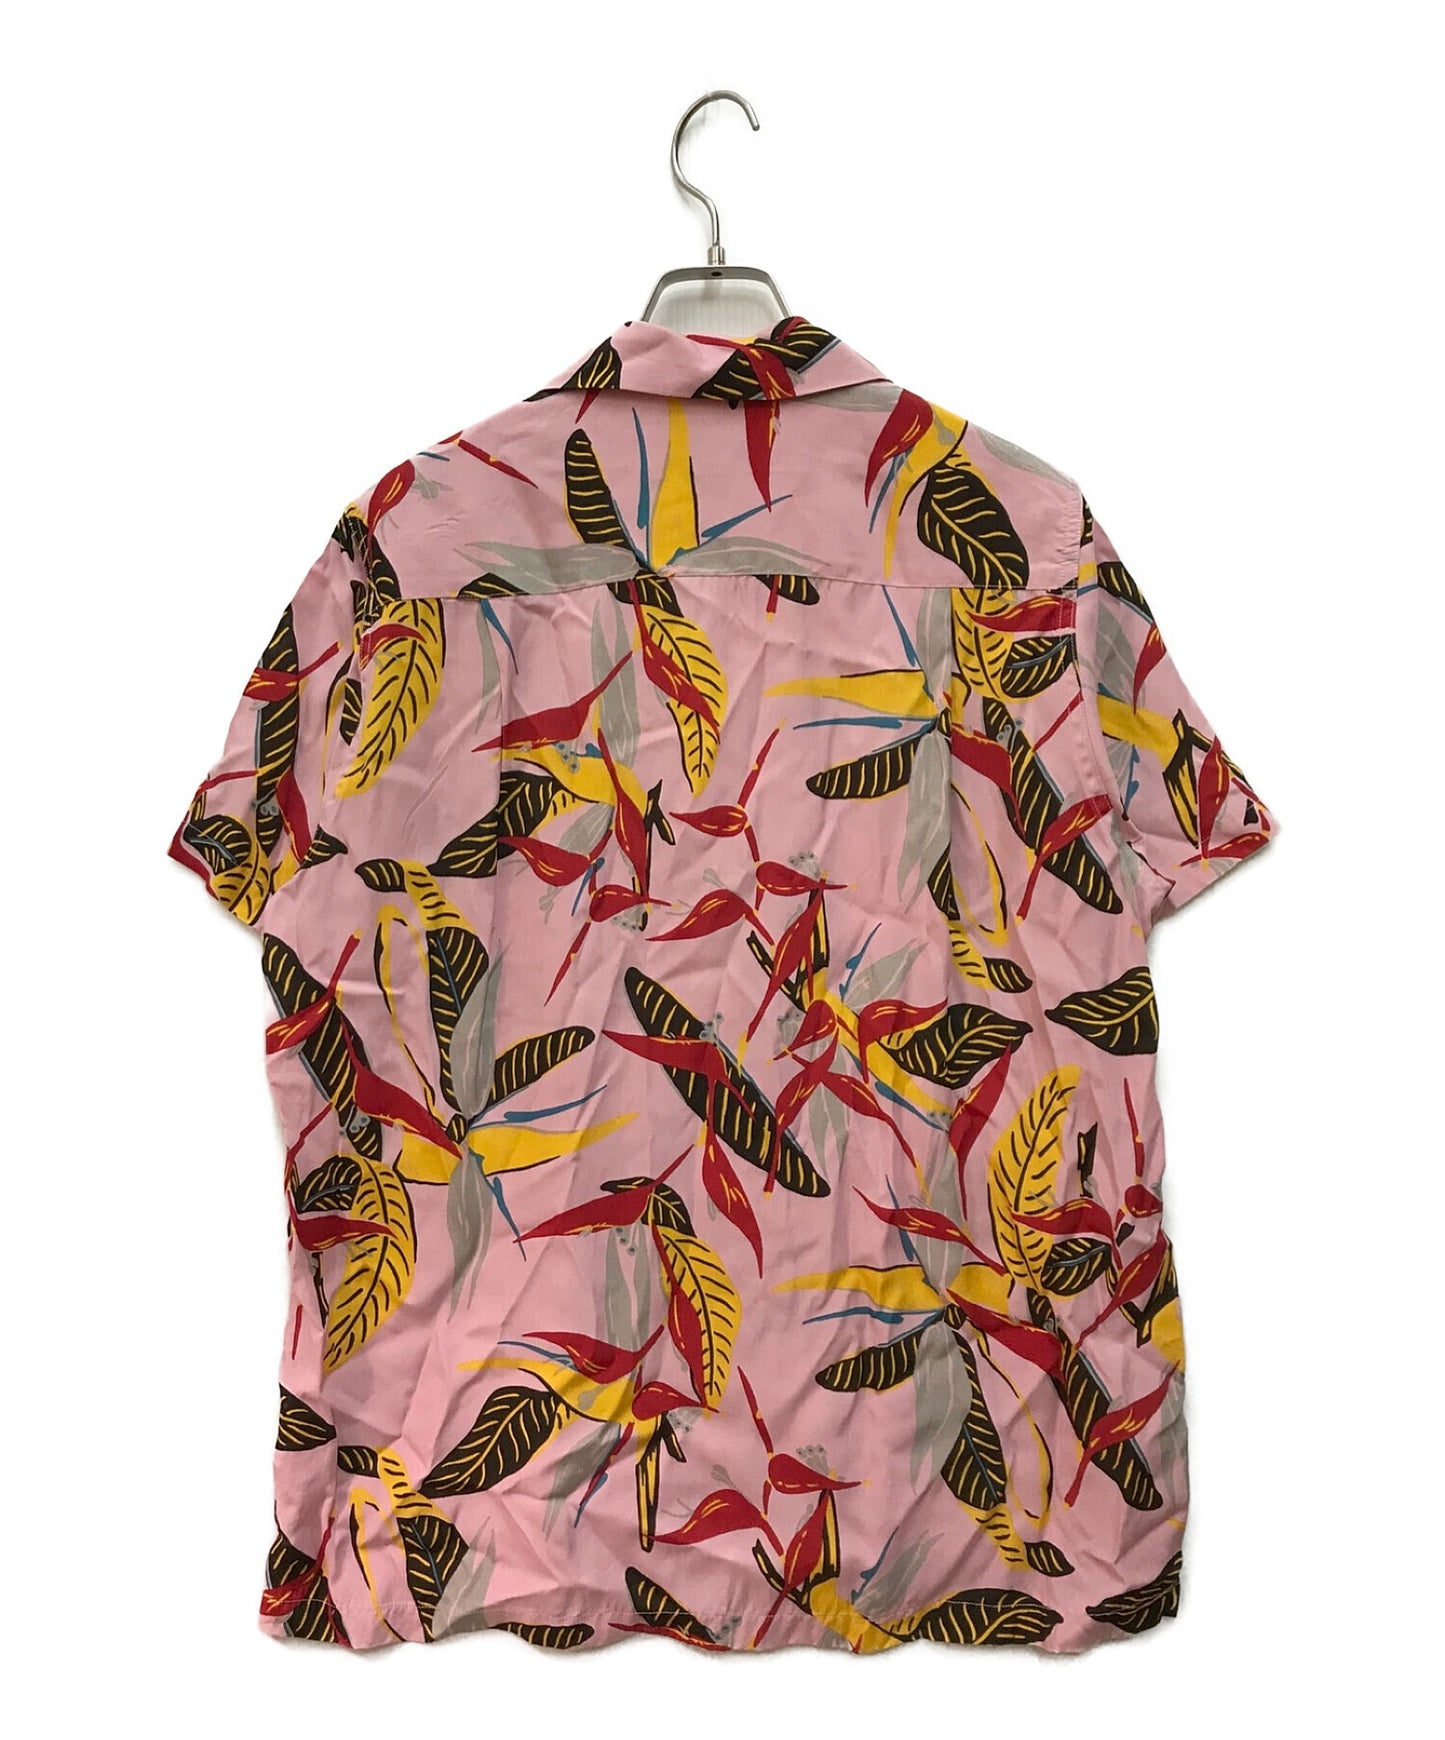 Wacko Maria Aloha衬衫总图案衬衫露天领衬衫